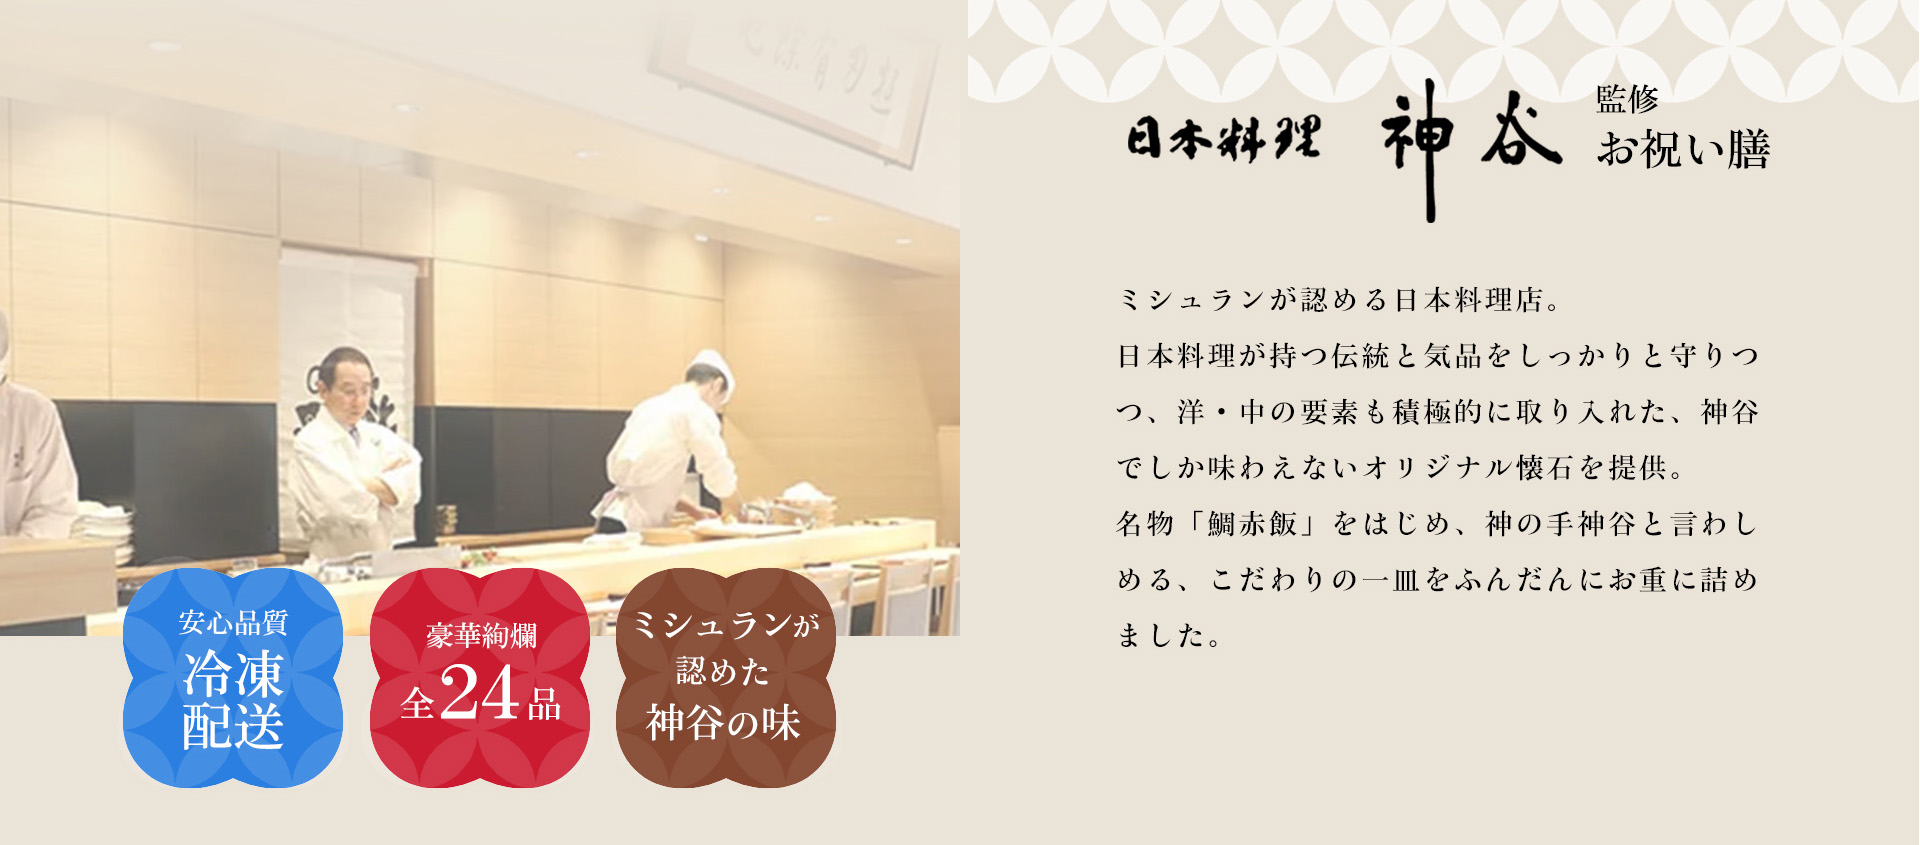 ミシュランが認める日本料理店。日本料理が持つ伝統と気品をしっかりと守りつつ、洋・中の要素も積極的に取り入れた、神谷でしか味わえないオリジナル懐石を提供。名物「鯛赤飯」をはじめ、神の手神谷と言わしめる、こだわりの一皿をふんだんにお重に詰めました。